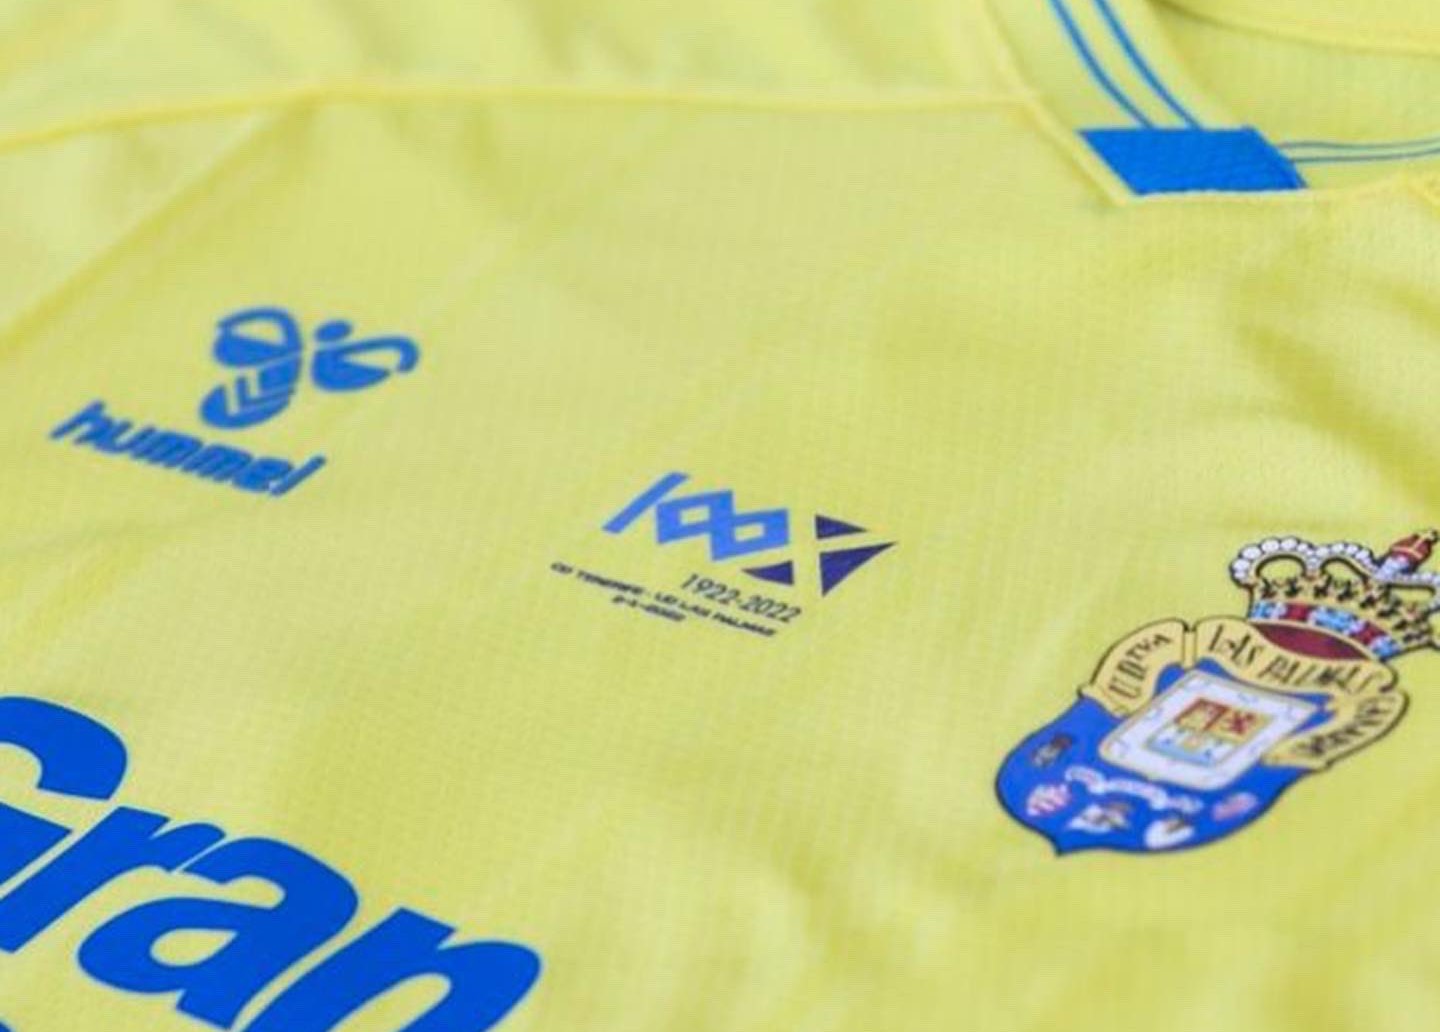 La UD Las Palmas lucirá el logo del Centenario del CD Tenerife en el derbi